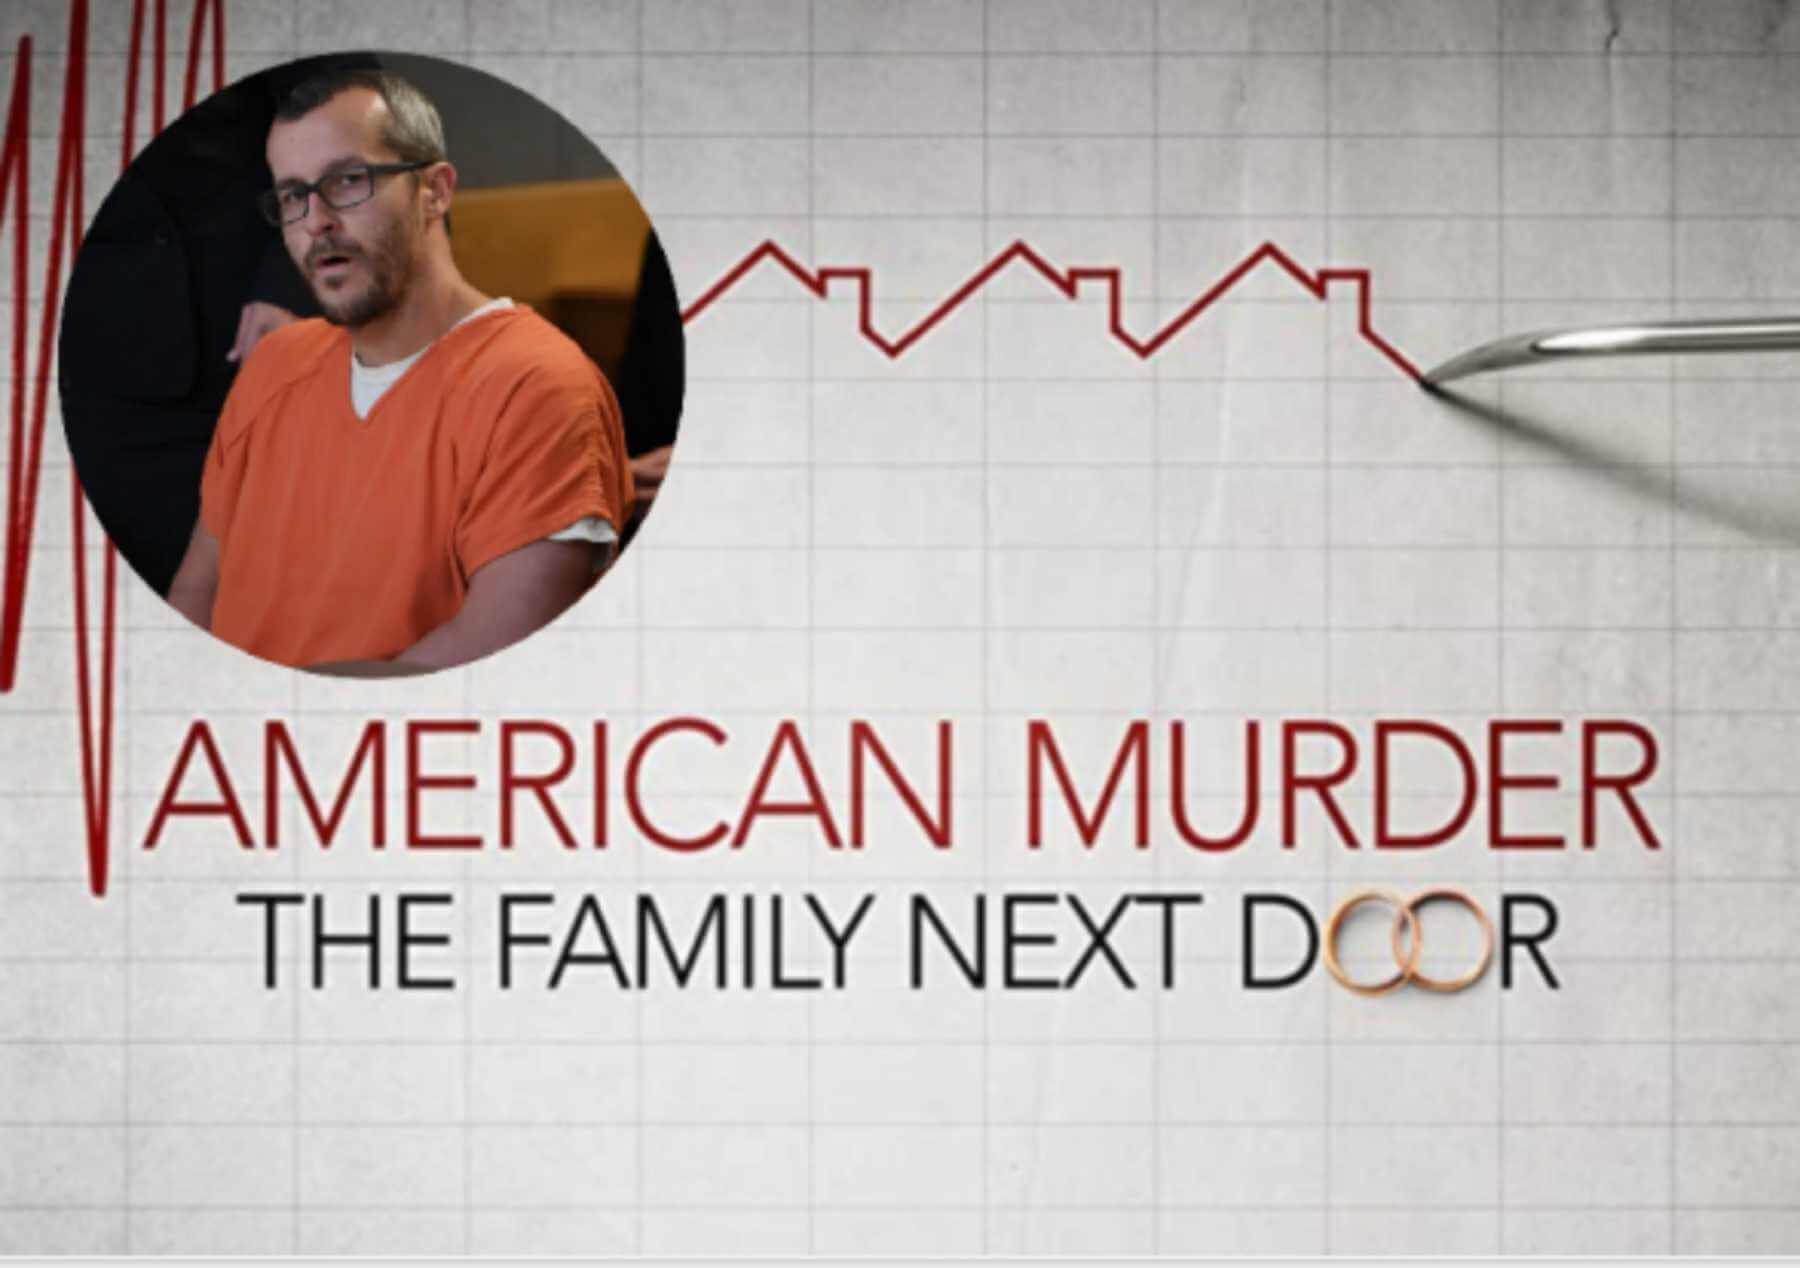 American Murder - The Family Next Door